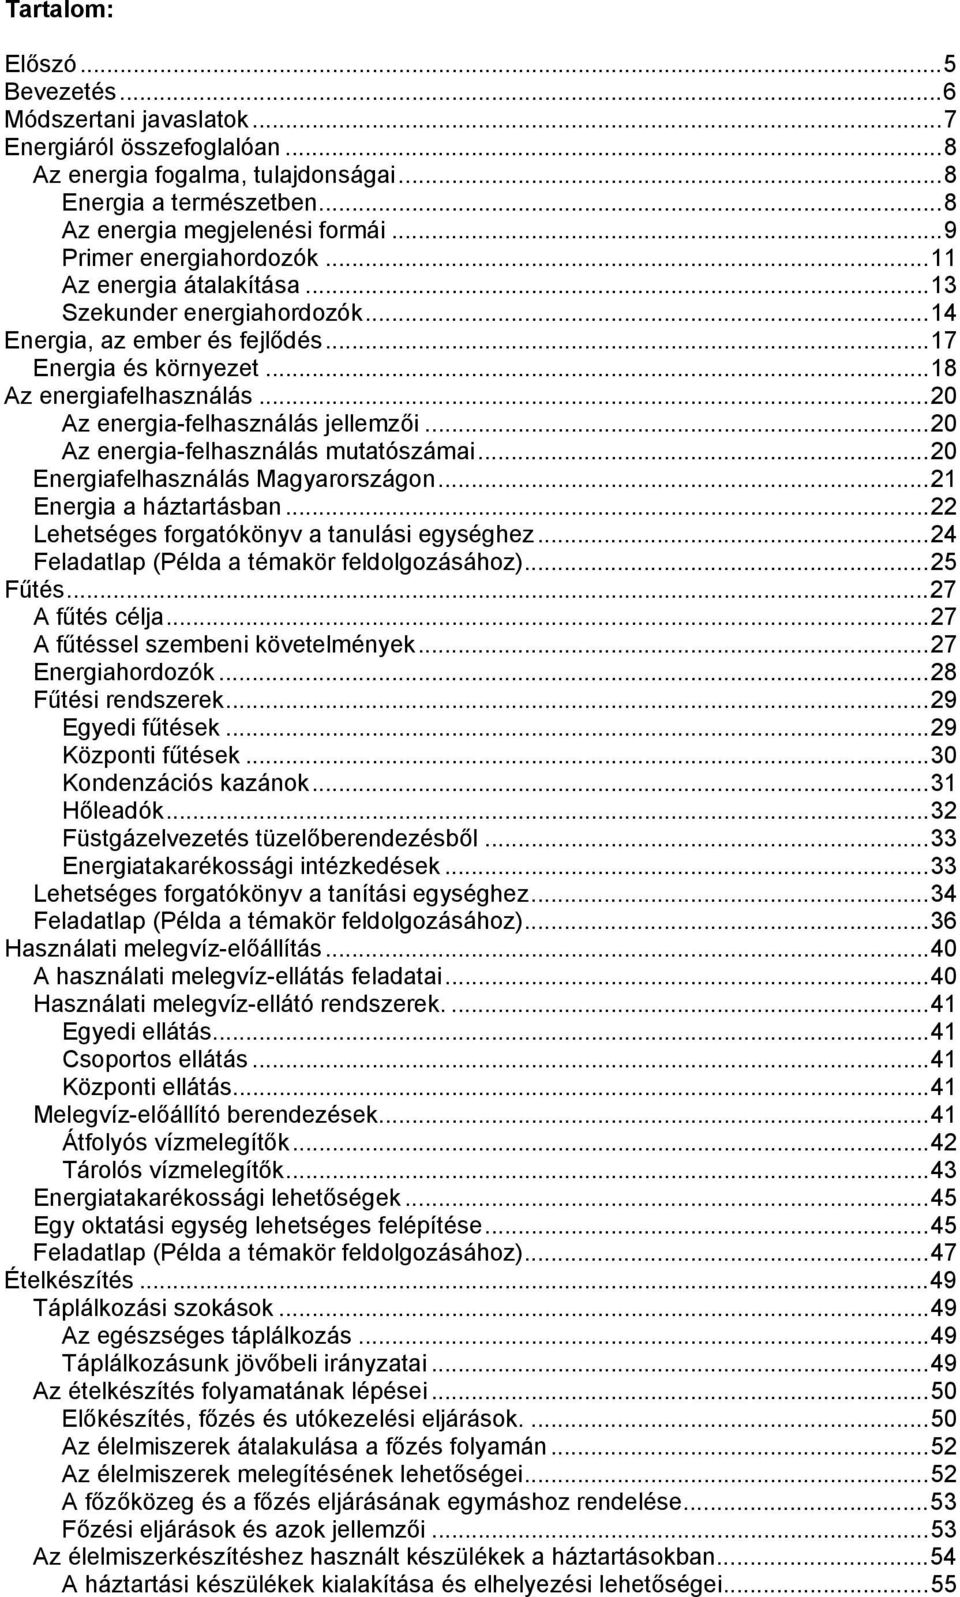 ..20 Az energia-felhasználás jellemzői...20 Az energia-felhasználás mutatószámai...20 Energiafelhasználás Magyarországon...21 Energia a háztartásban...22 Lehetséges forgatókönyv a tanulási egységhez.